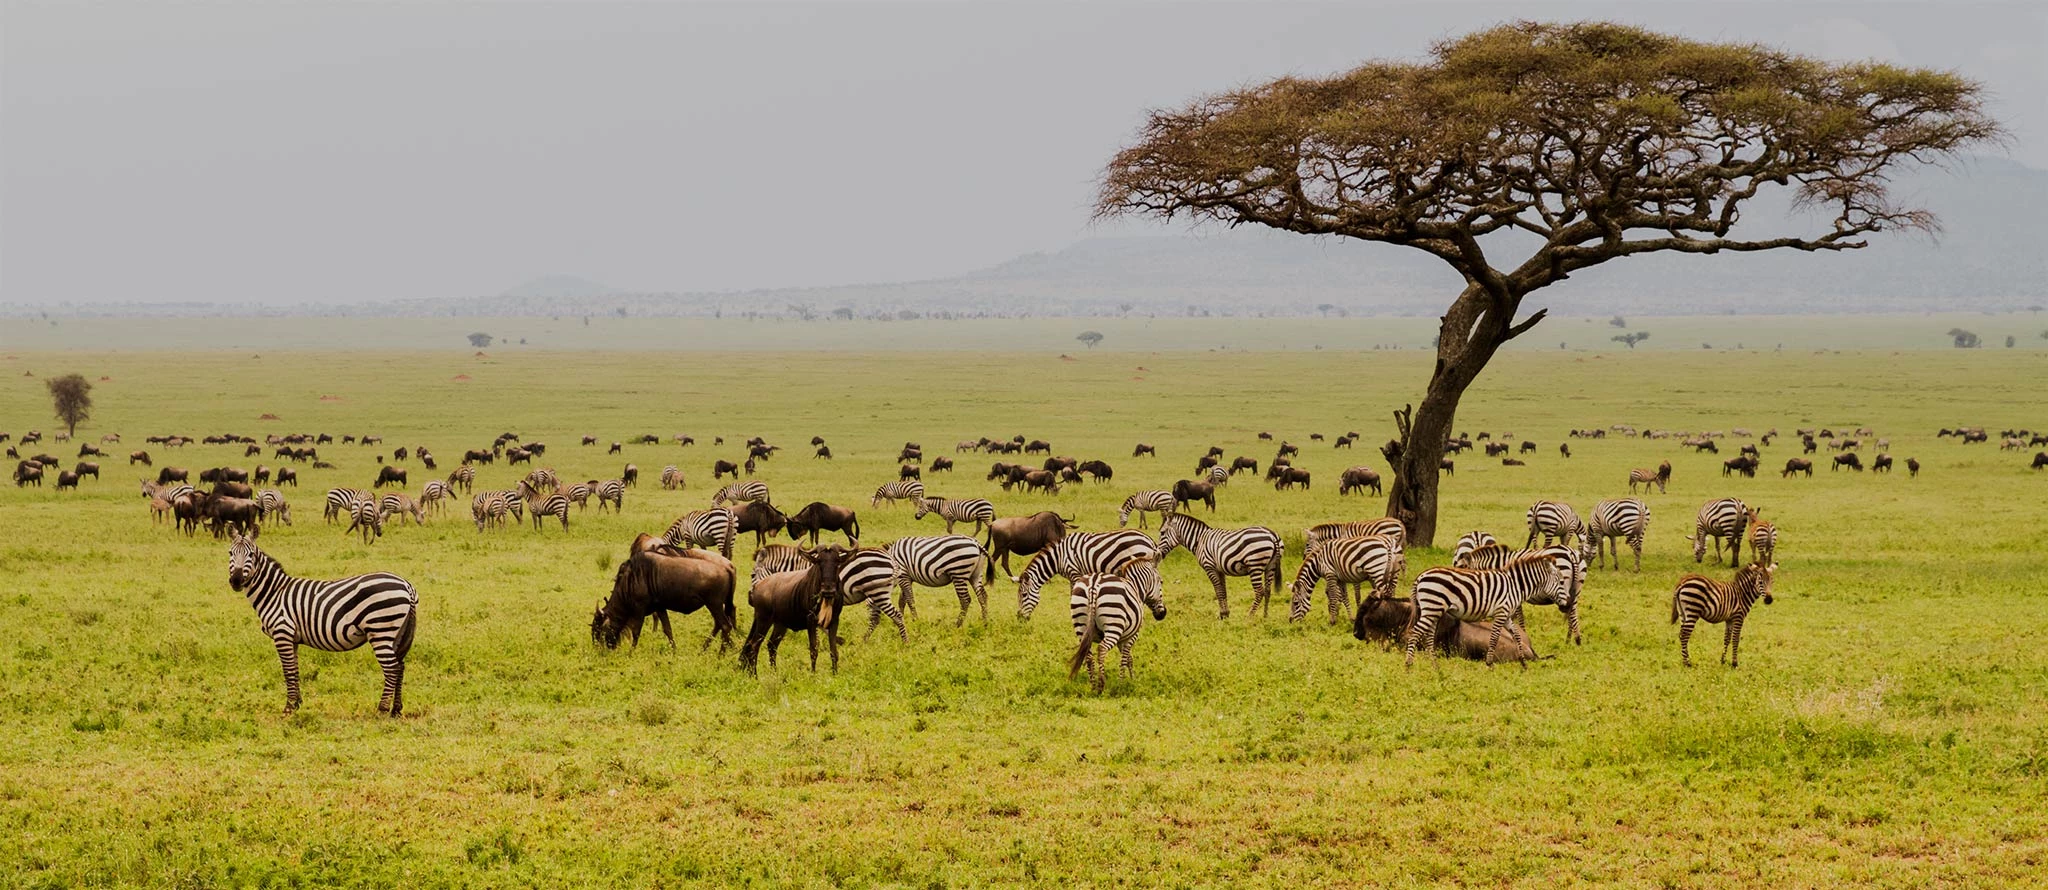 Tanzania and uganda safari